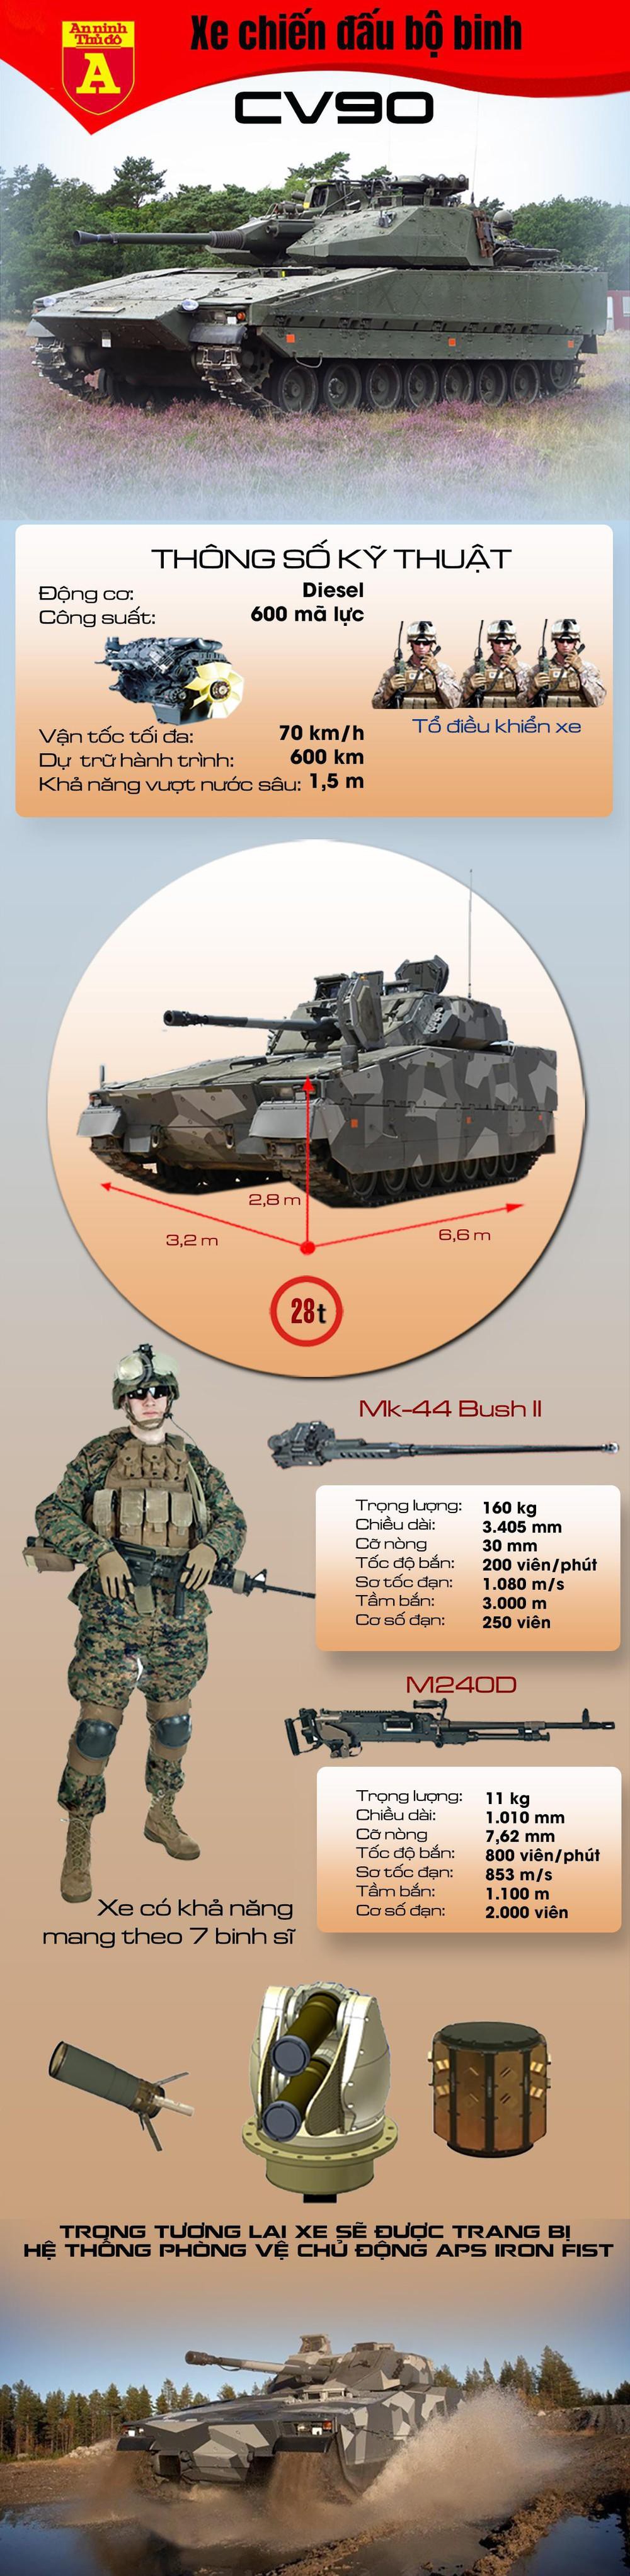 Khám phá xe chiến đấu bộ binh CV-90  - Ảnh 1